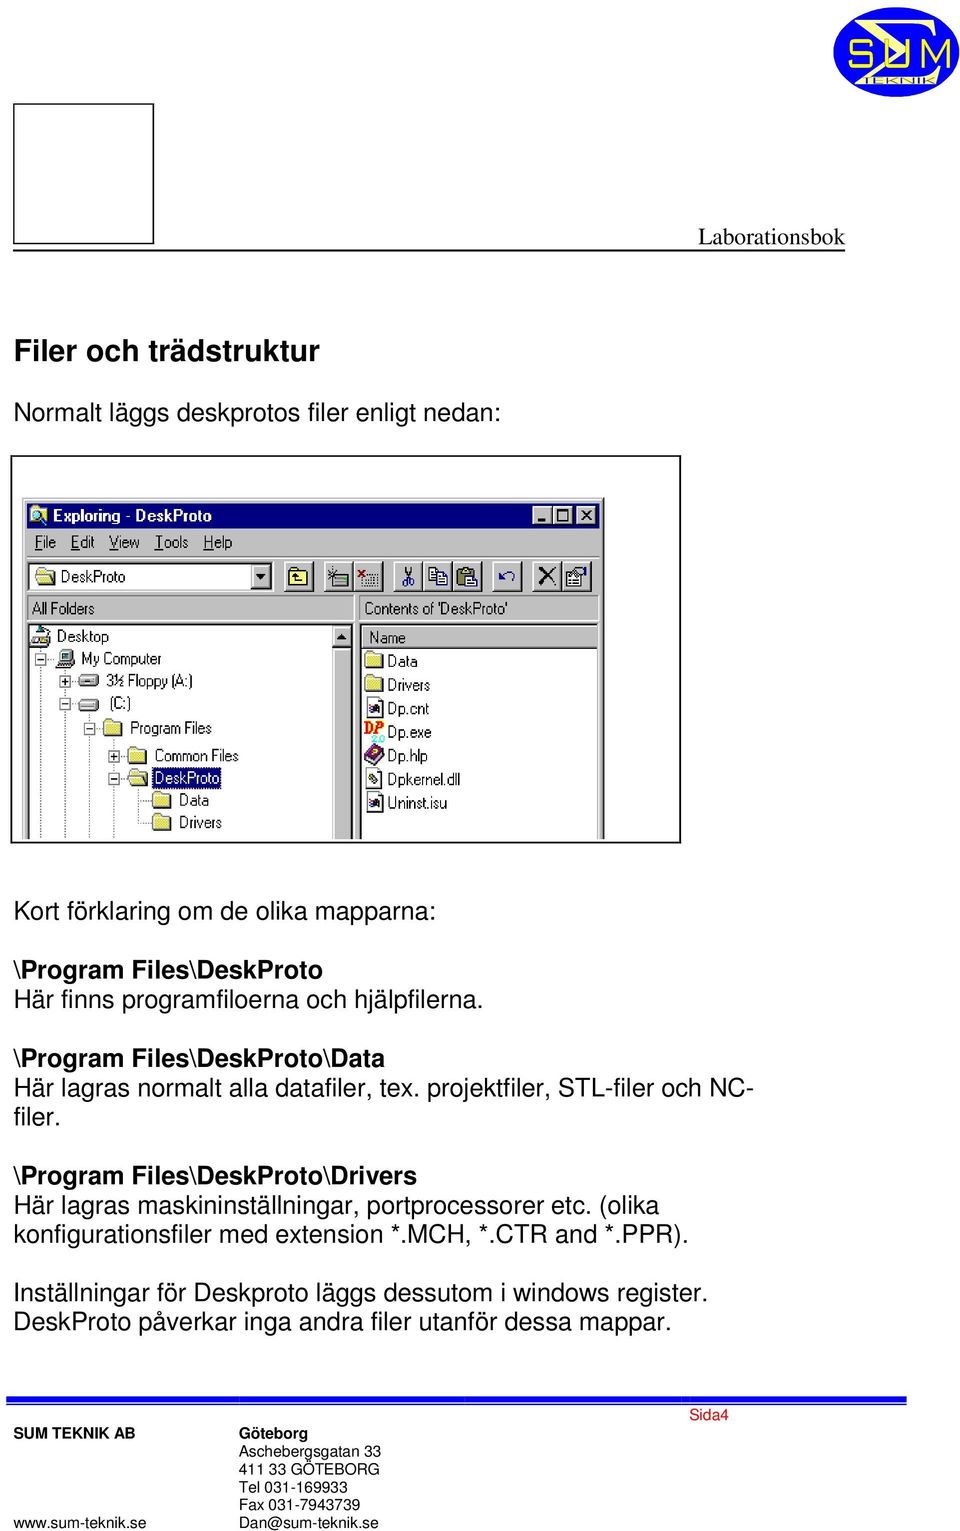 projektfiler, STL-filer och NCfiler. \Program Files\DeskProto\Drivers Här lagras maskininställningar, portprocessorer etc.